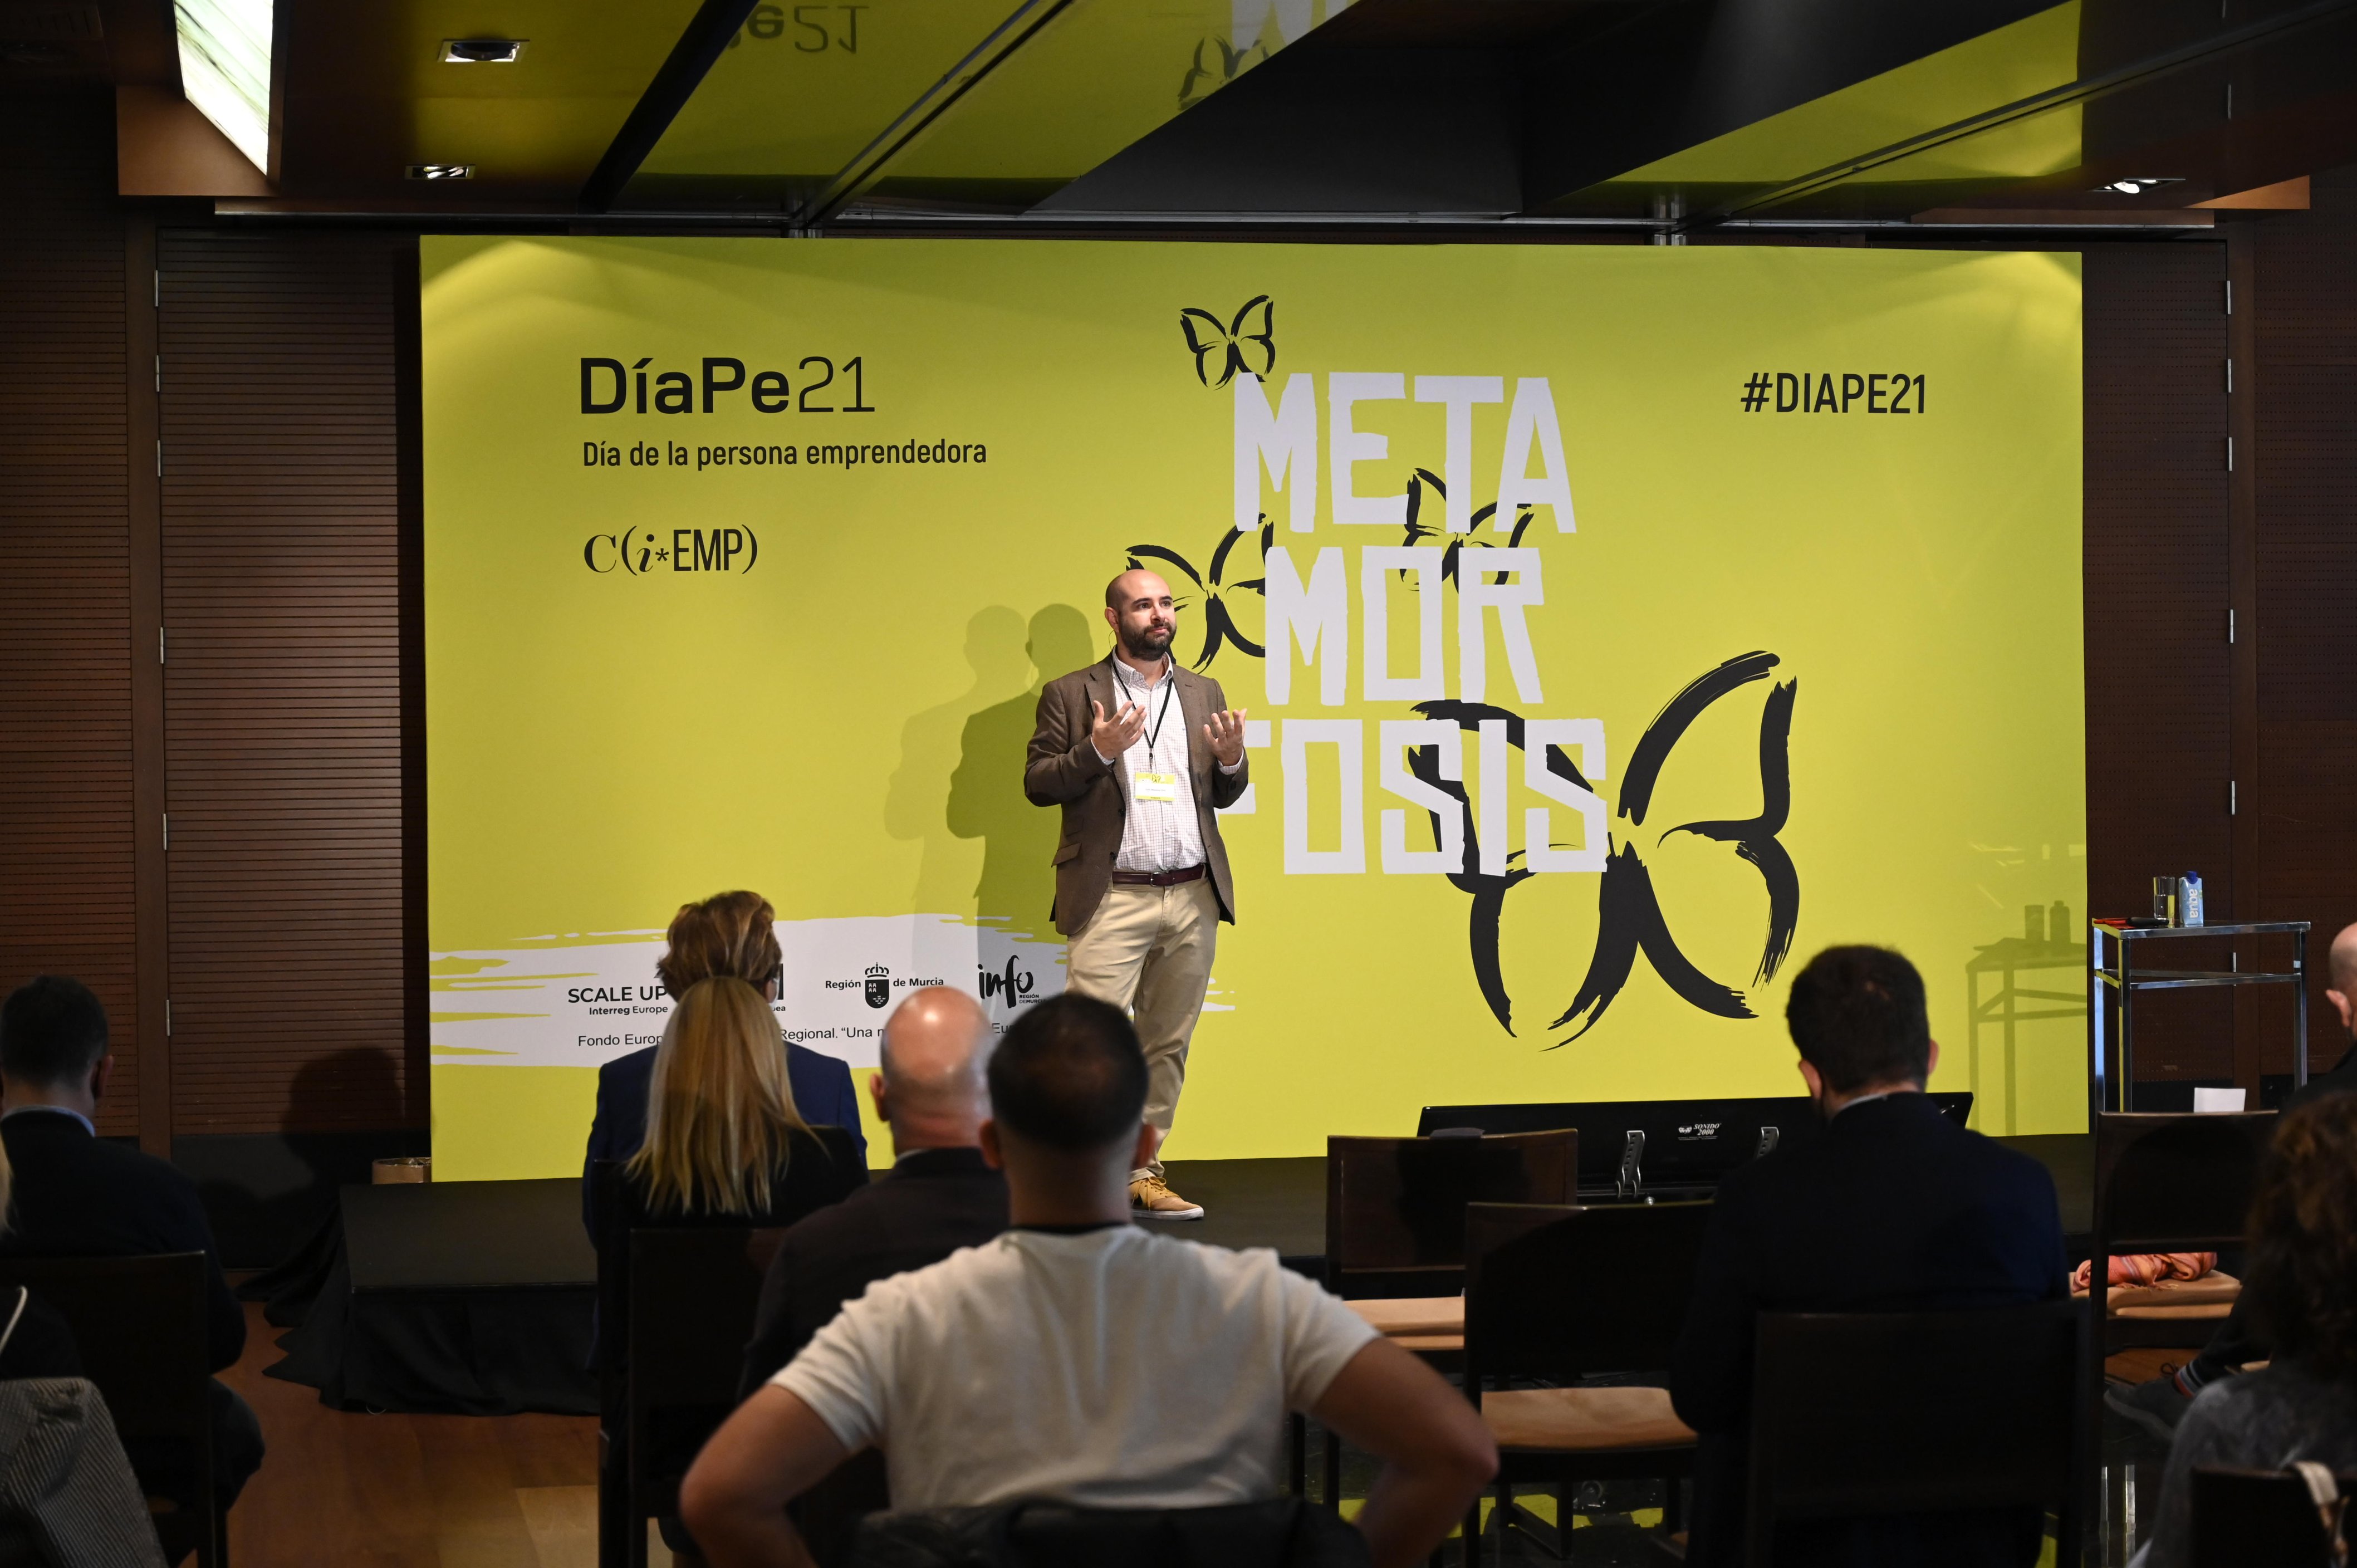 1.500 entrepreneurs participate in DIAPE ’21